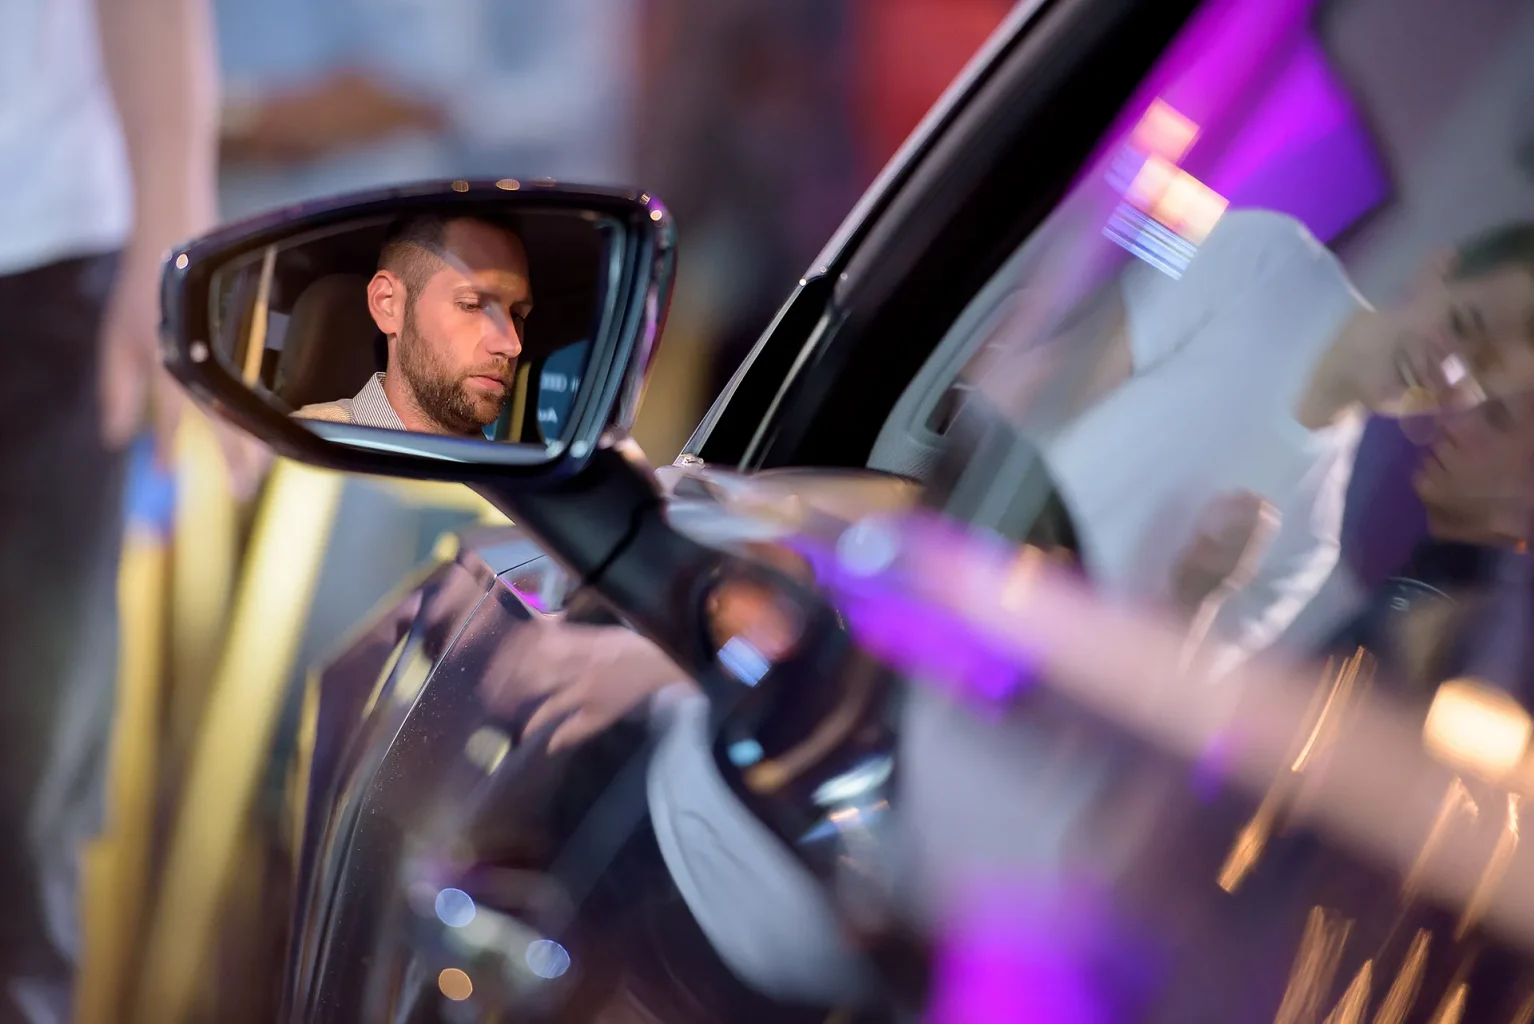 Bemutató rendezvény fotózása, ahol egy férfi ül az autóban és a visszapillantóban látszik az arca.